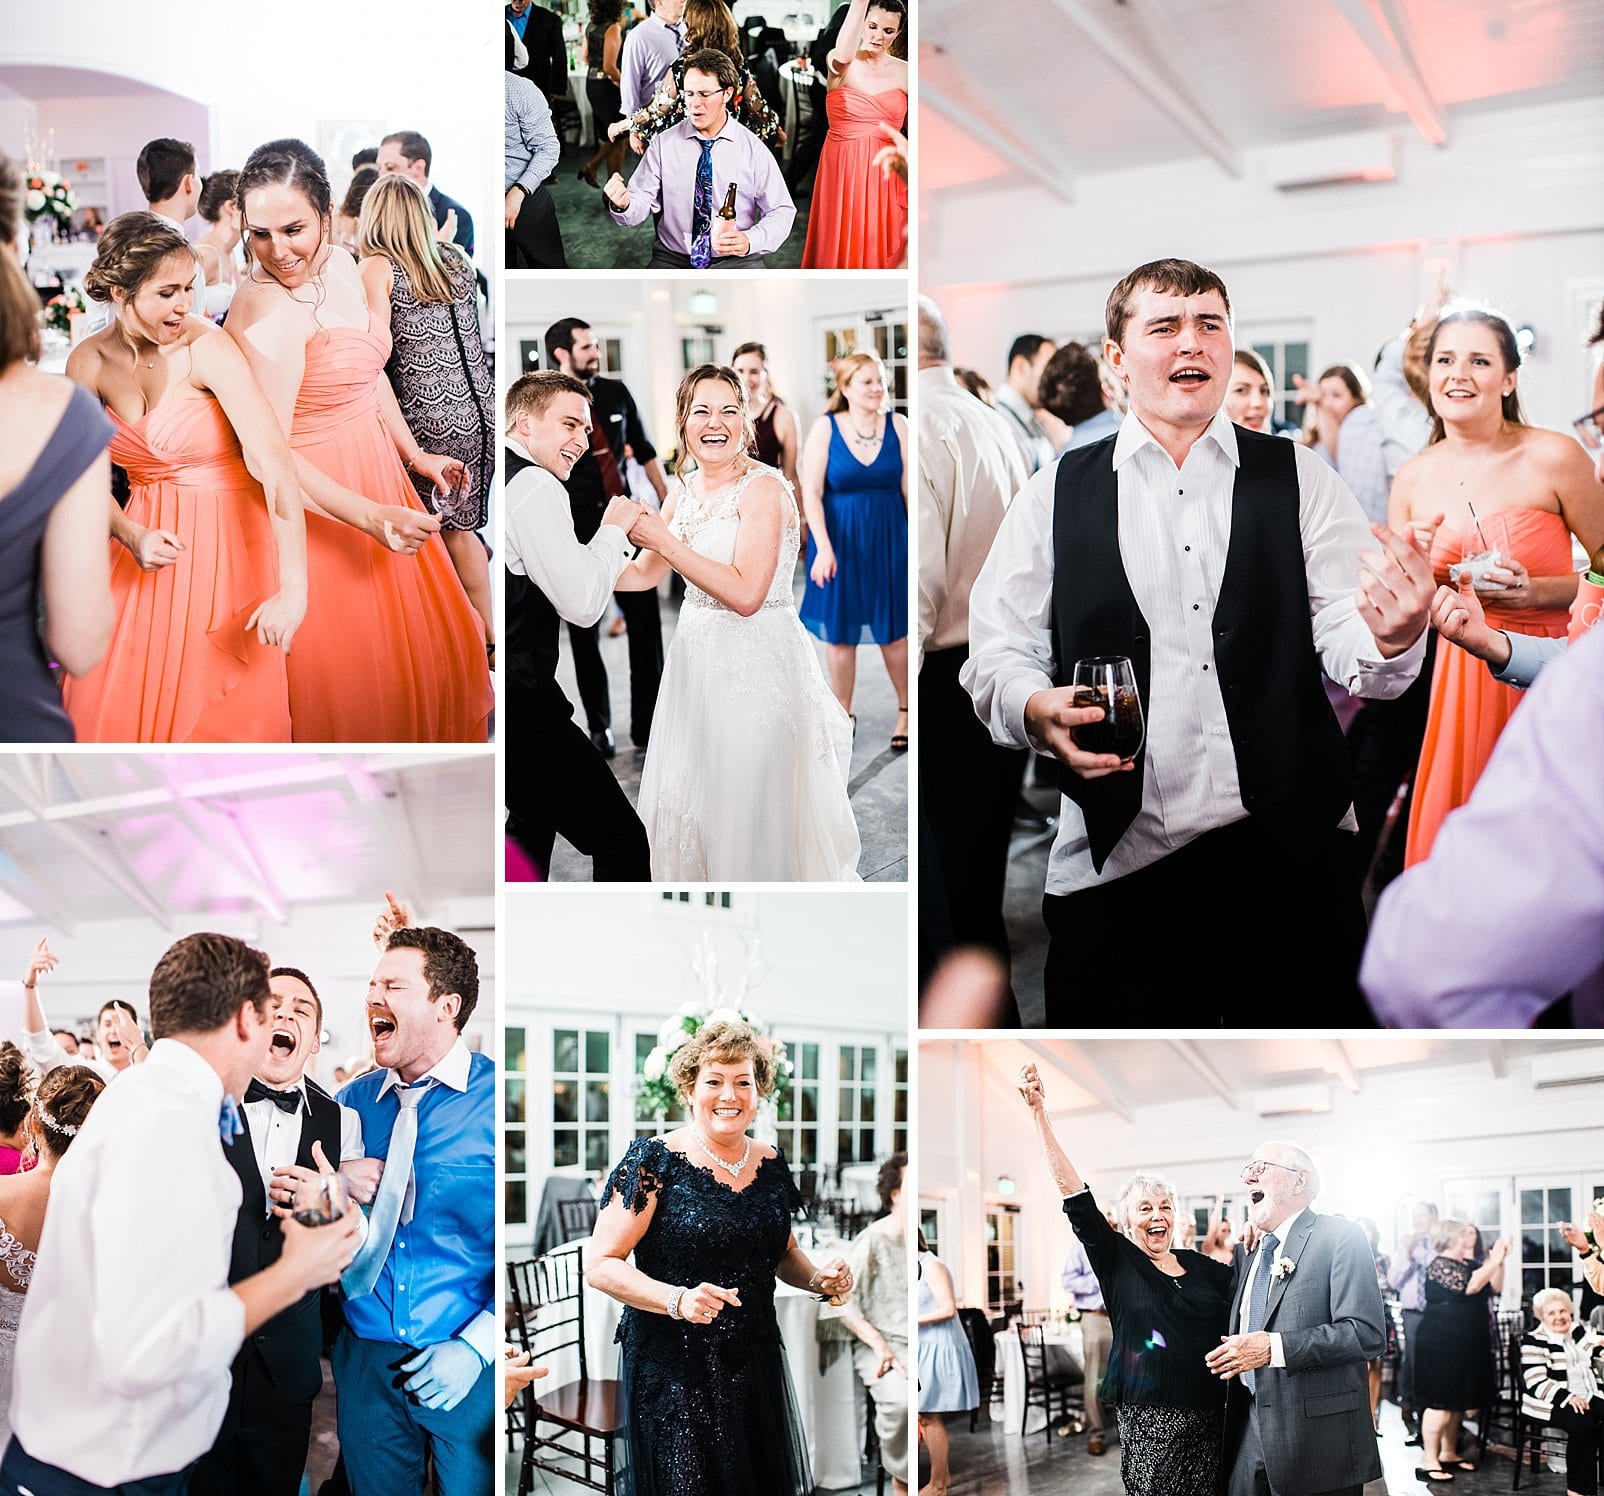 merrimon wynne wedding reception dancing photo